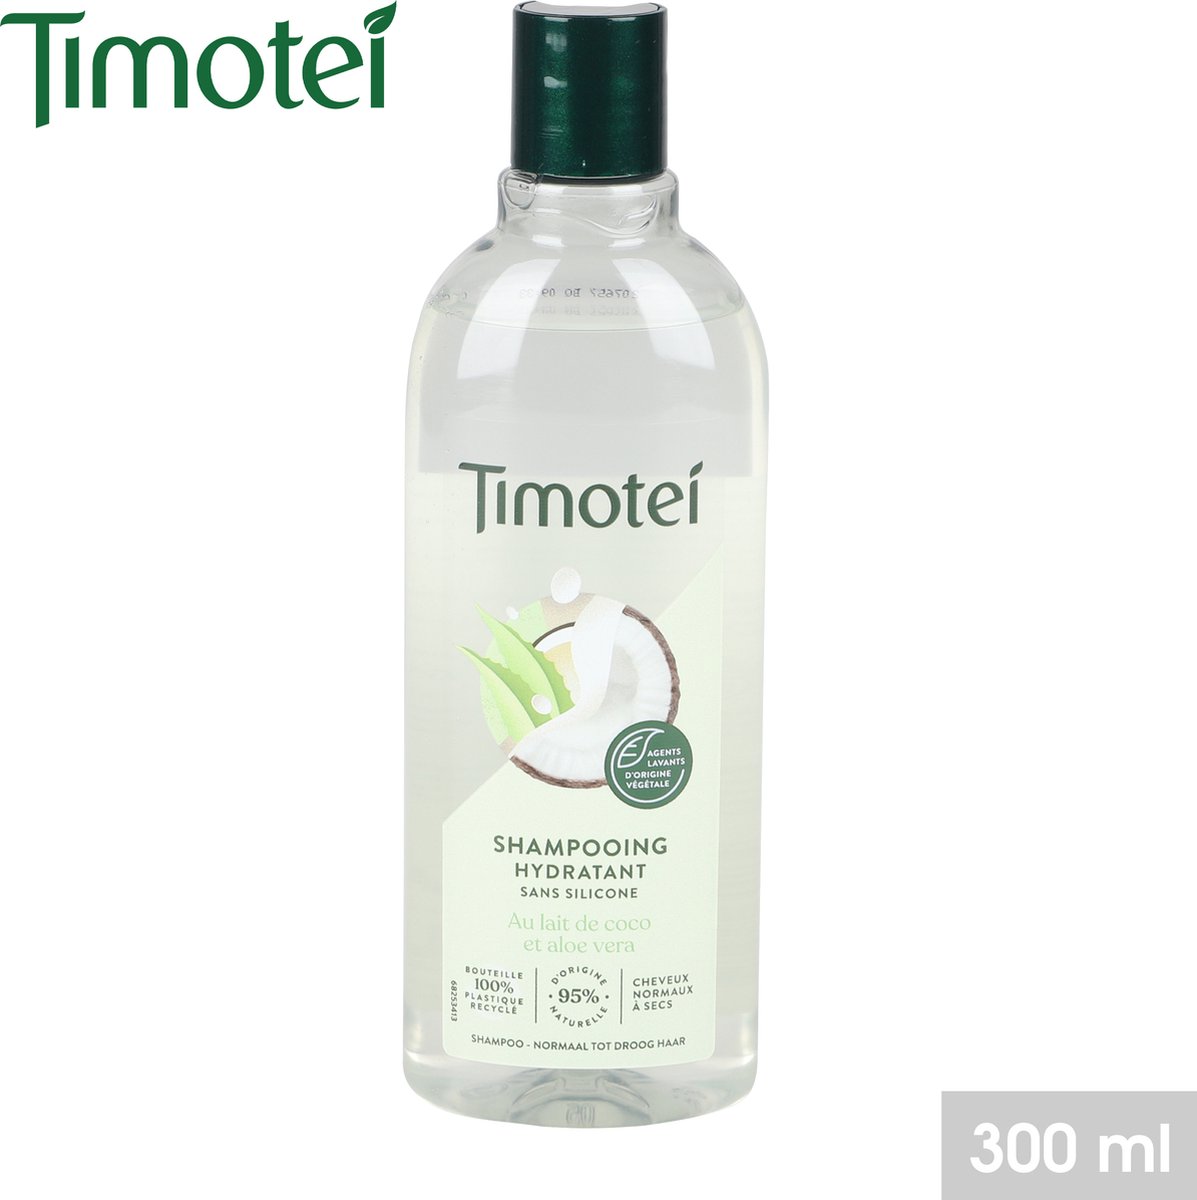 Timotei hydraterende shampoo - 2in1 - aloä vera en kokosolie - 300ml - 2stuks